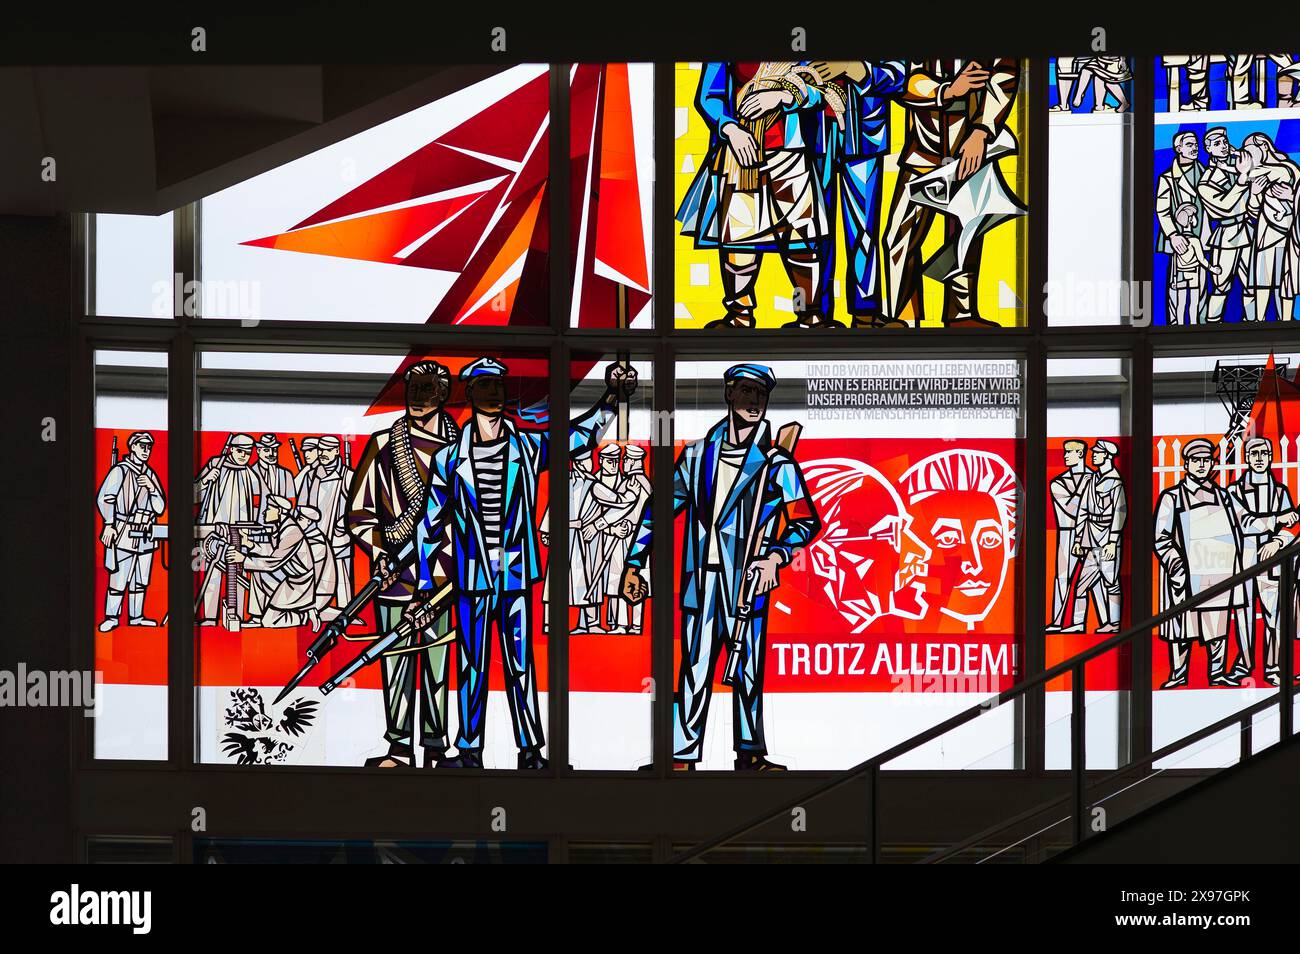 Interior photograph, stained glass window, Communist propaganda art, Rosa Luxemburg and Karl Liebknecht, quote DROTZ ALLEDEM, ESMT, European School Stock Photo